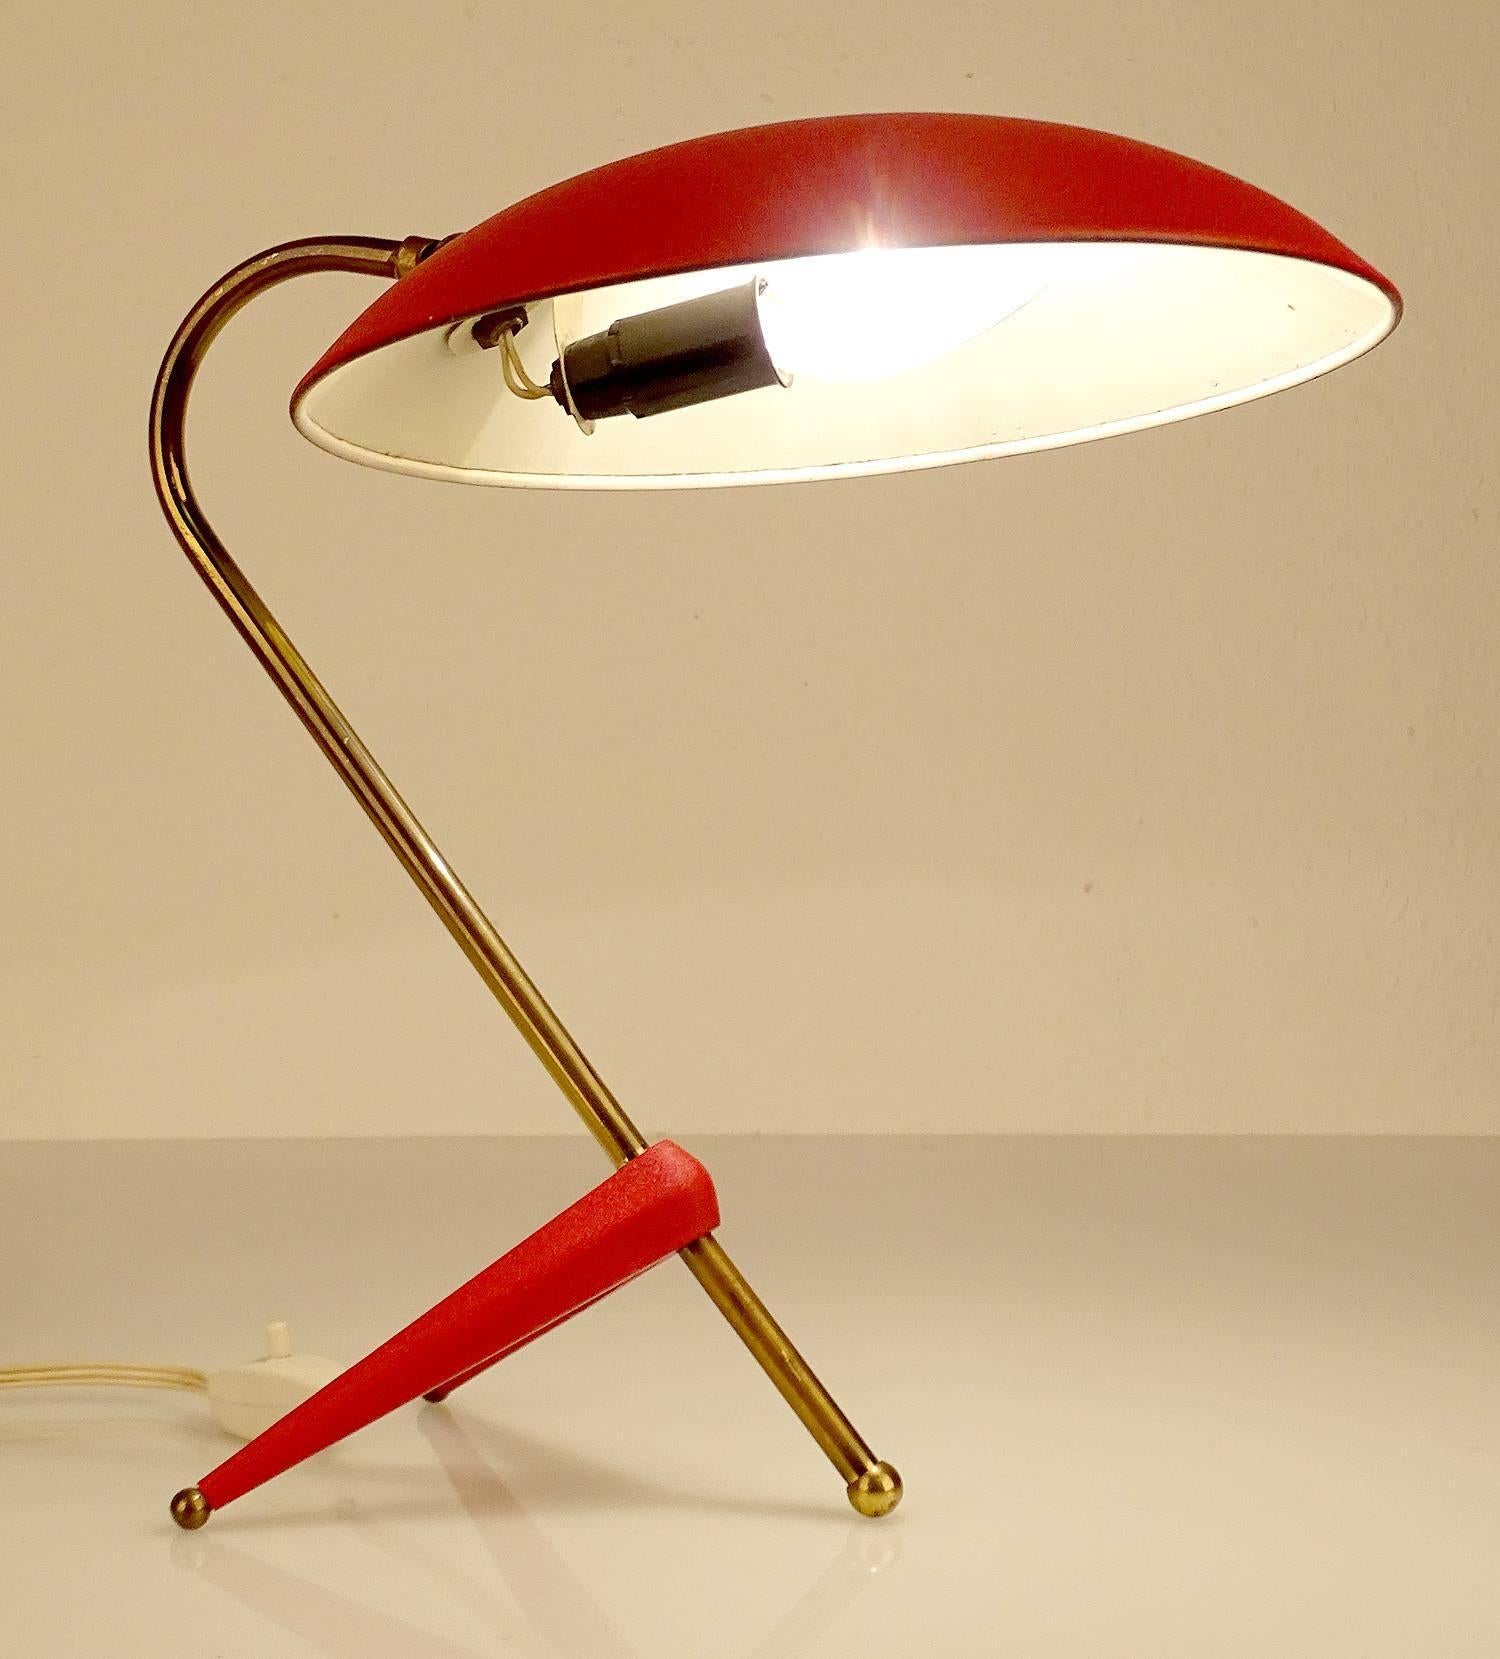 Austrian Stilnovo  Style Table Lamp, 1950s Italian Modernist Design  